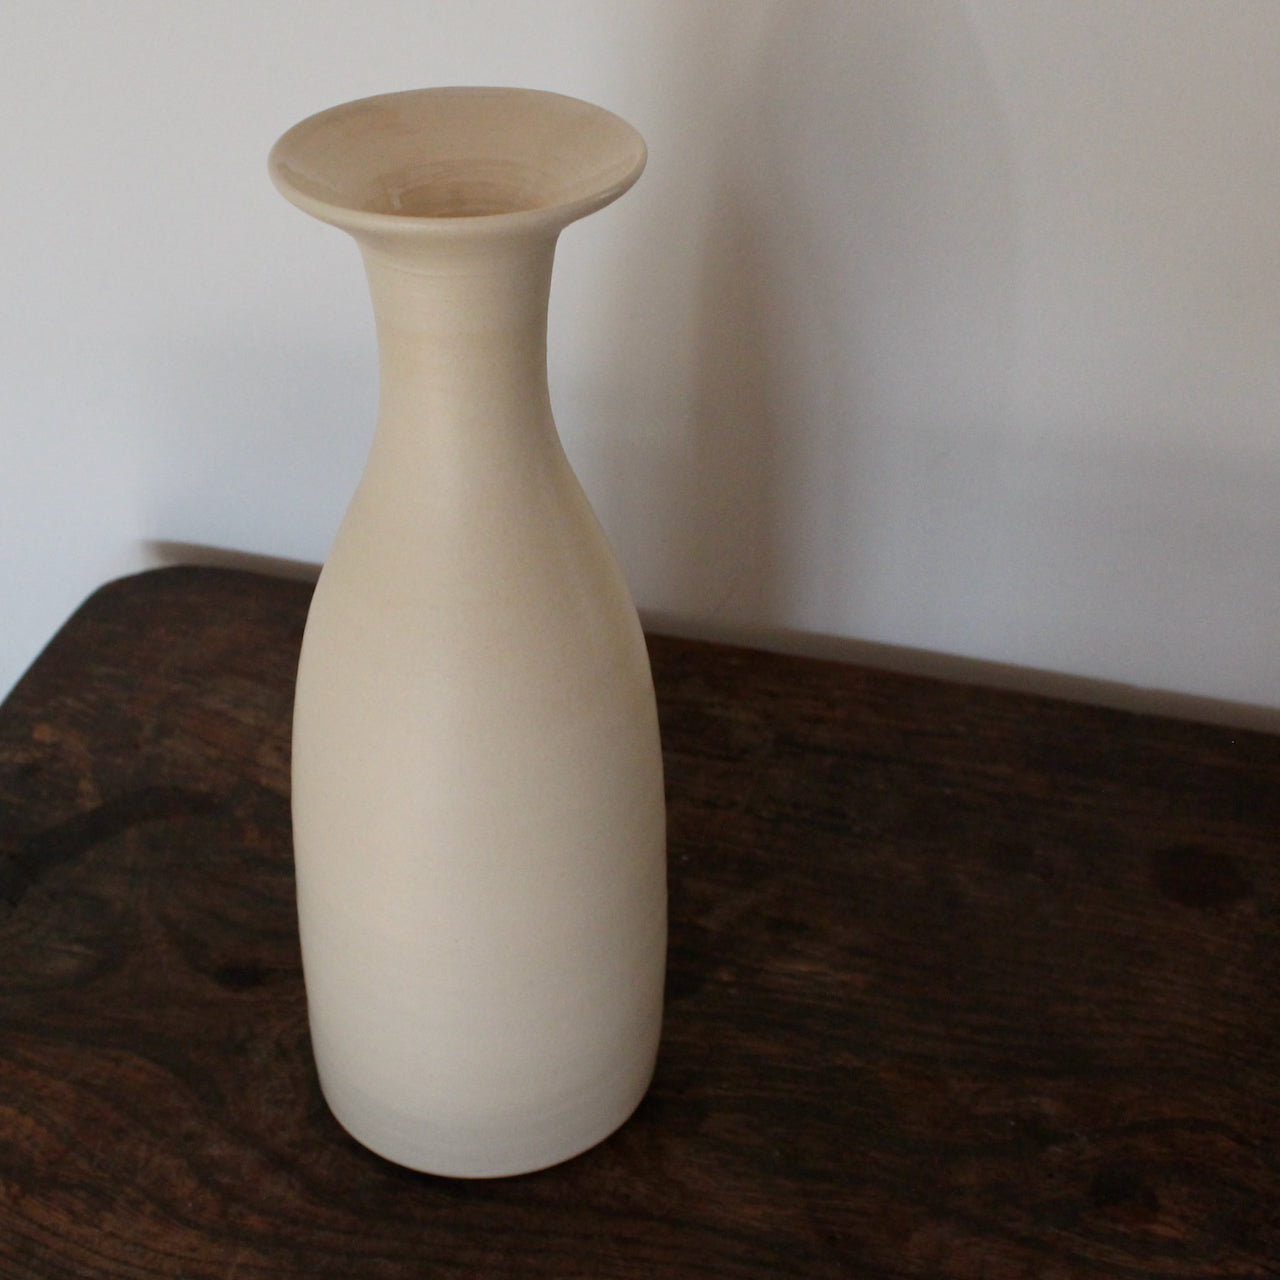 cream coloured ceramic vase by UK ceramic artist Lucy Burley 